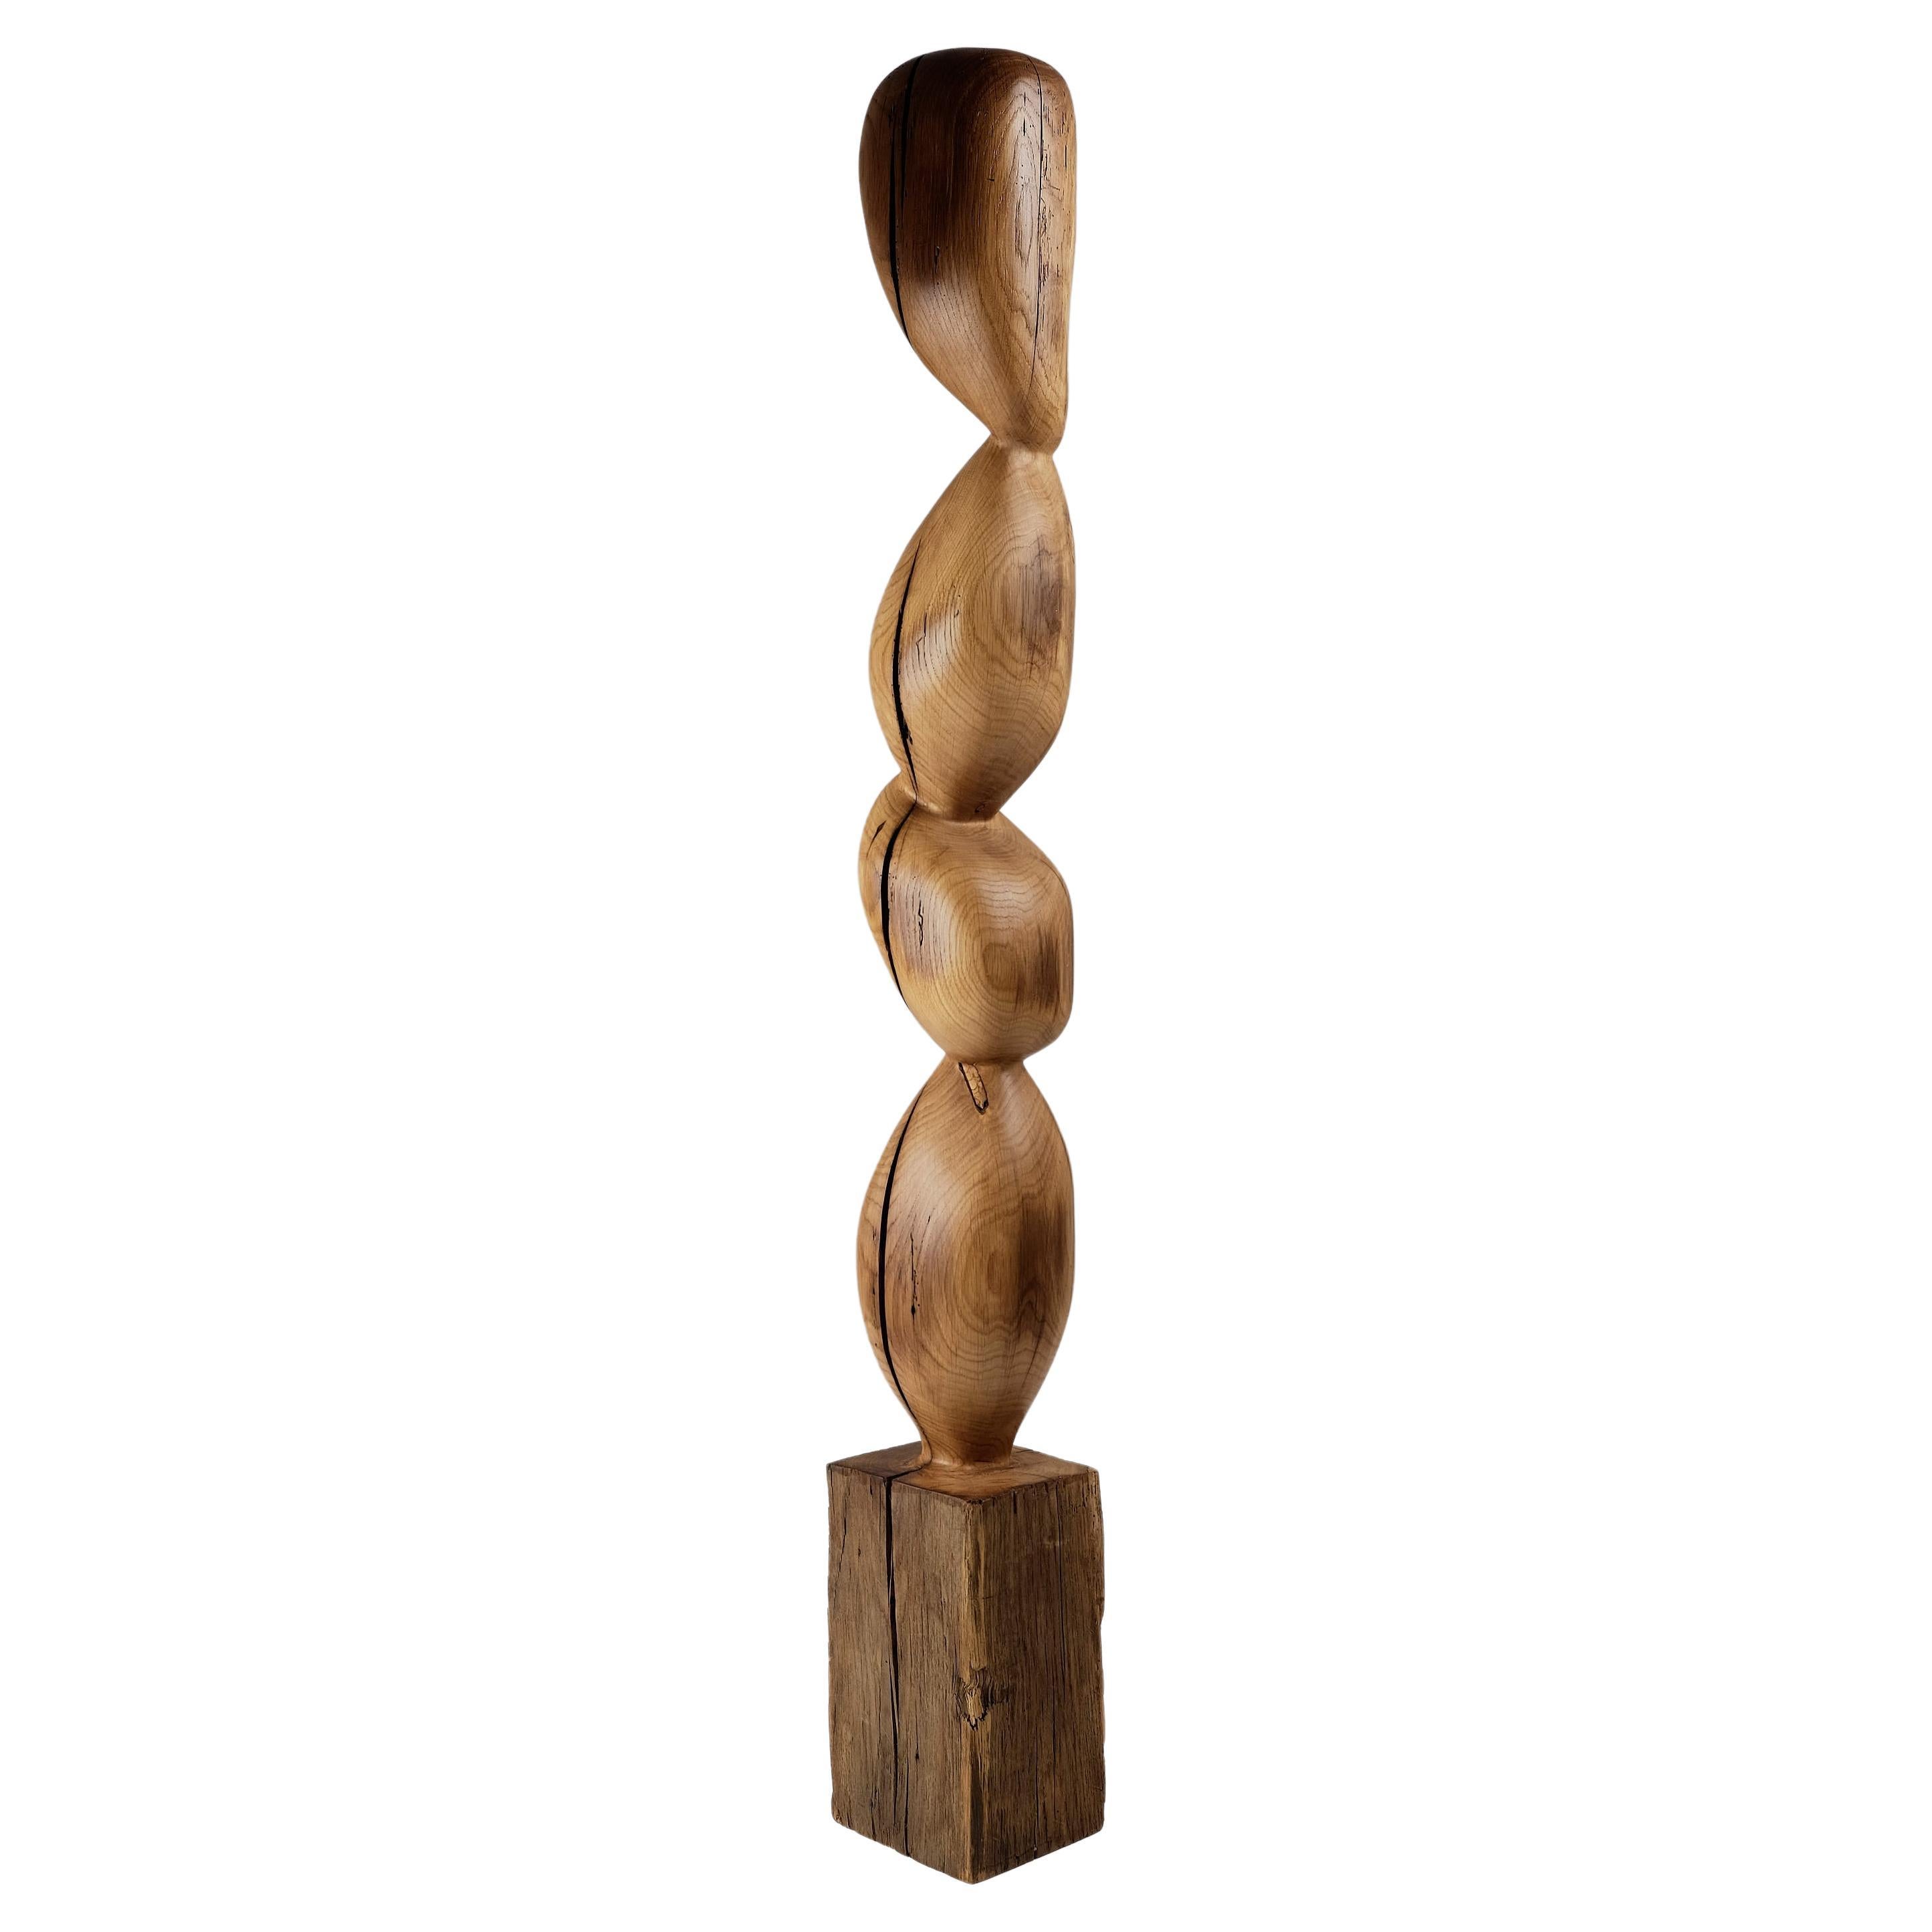 Still Stand Sculpture abstraite biomorphique en bois, sculptée à la tronçonneuse